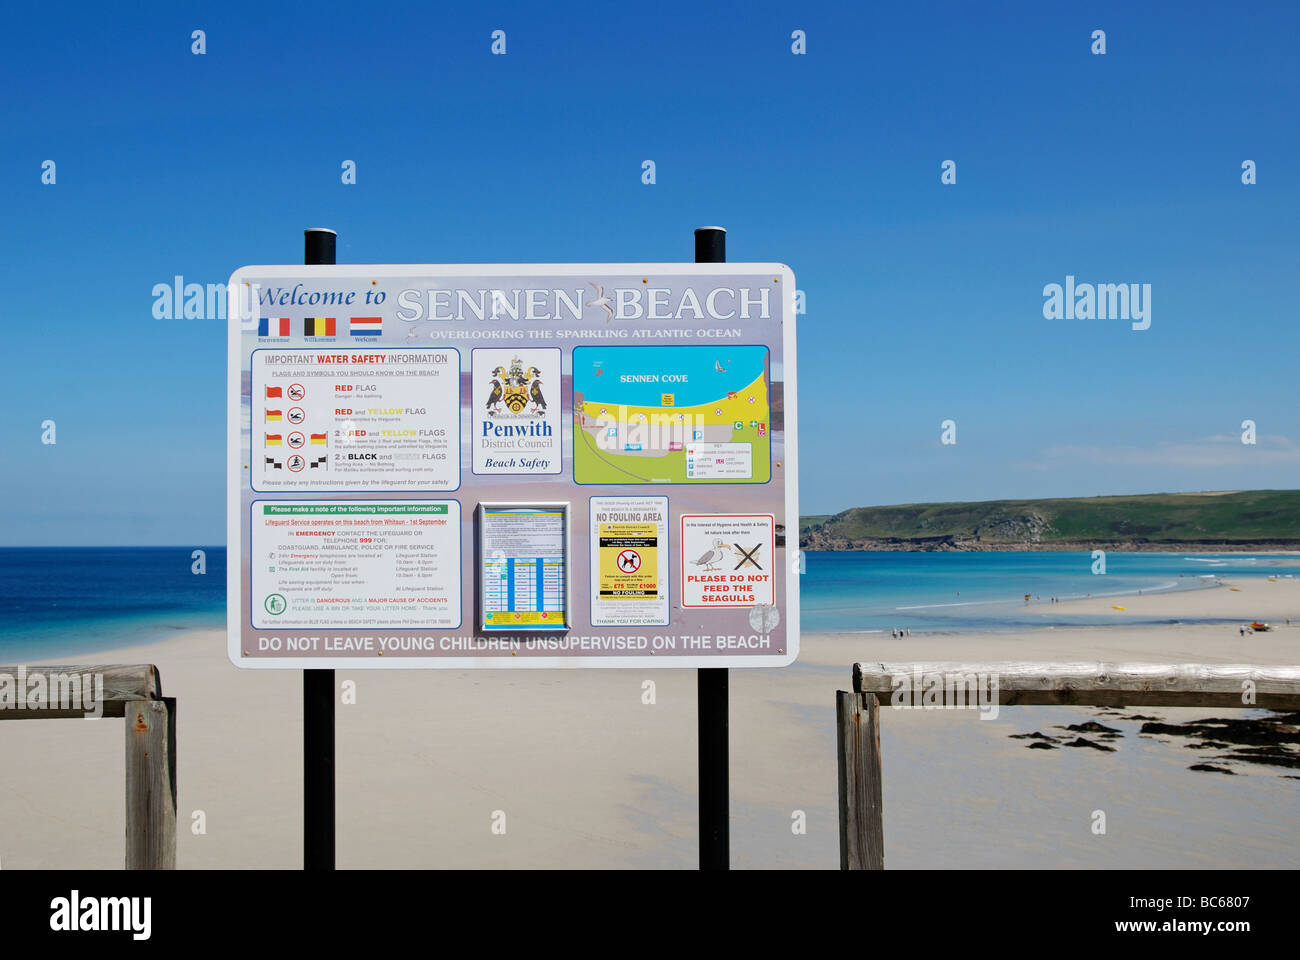 El cartel de bienvenida en la playa sennen en Cornualles, Reino Unido Foto de stock